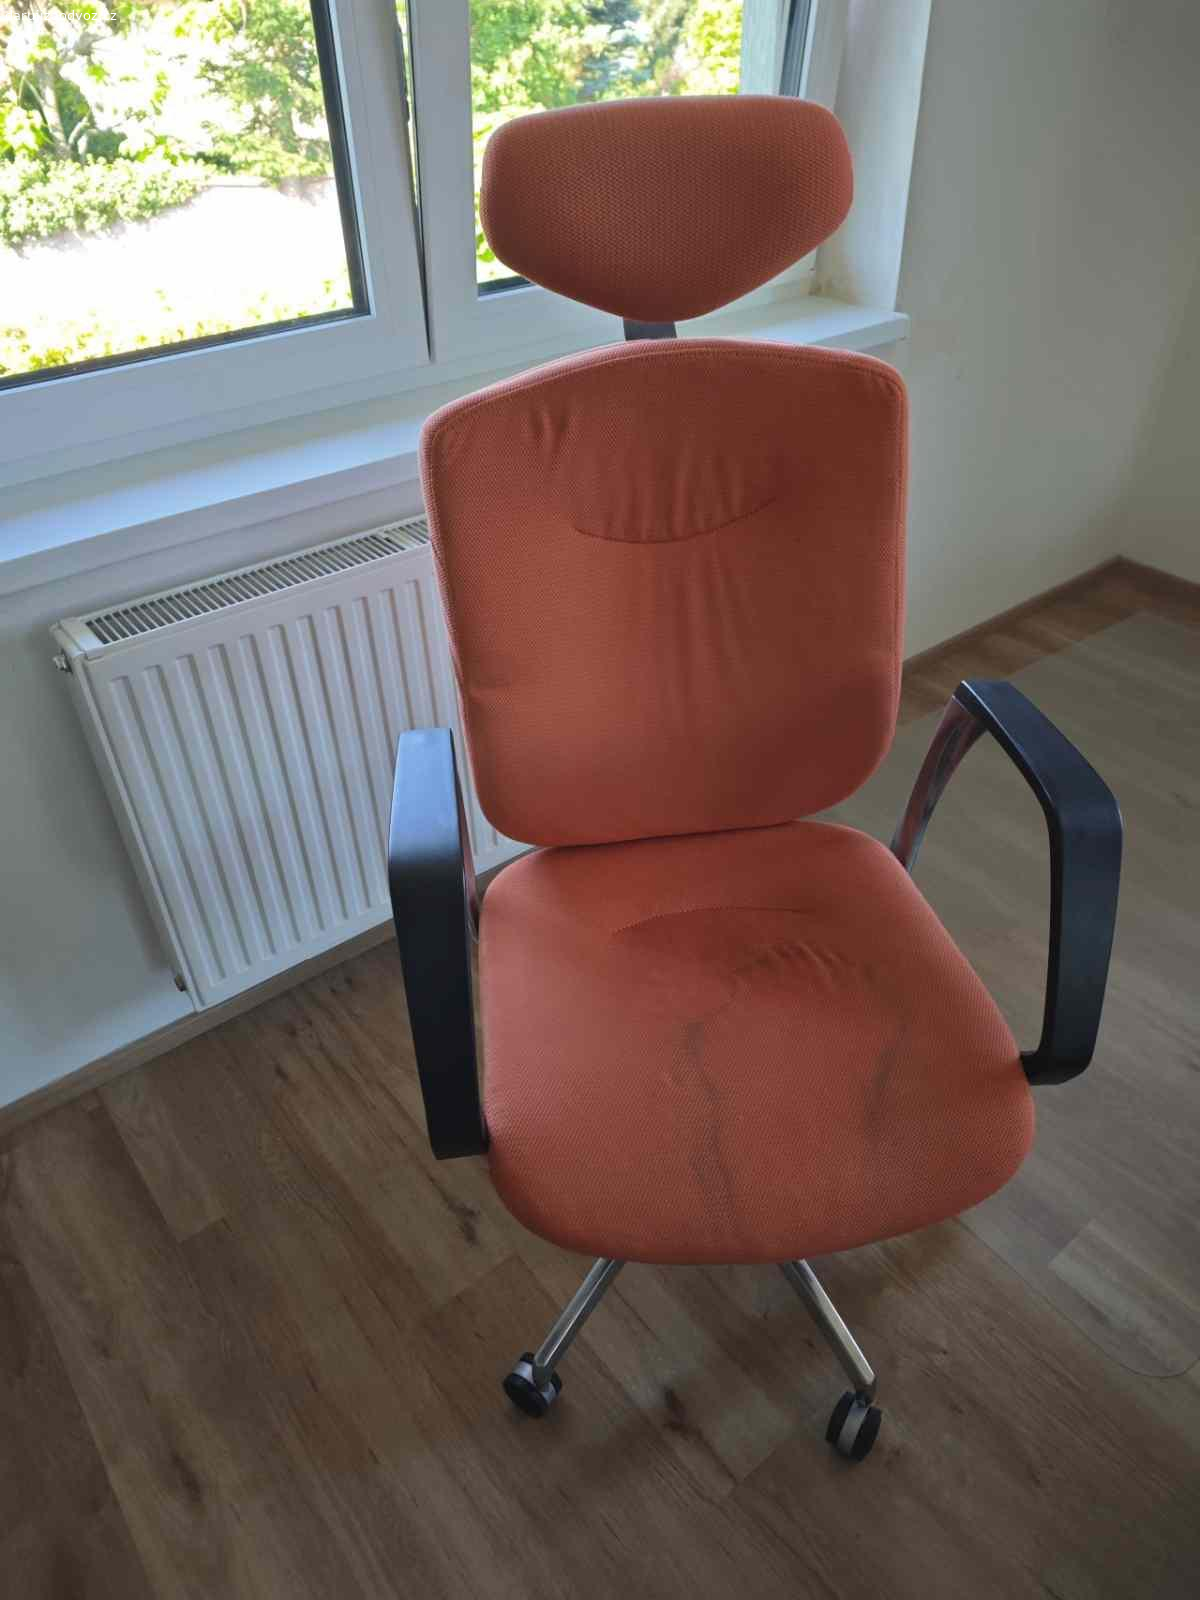 Židle. Kancelářská židle, pohodlná i pro větší postavu. Všechno funkční.